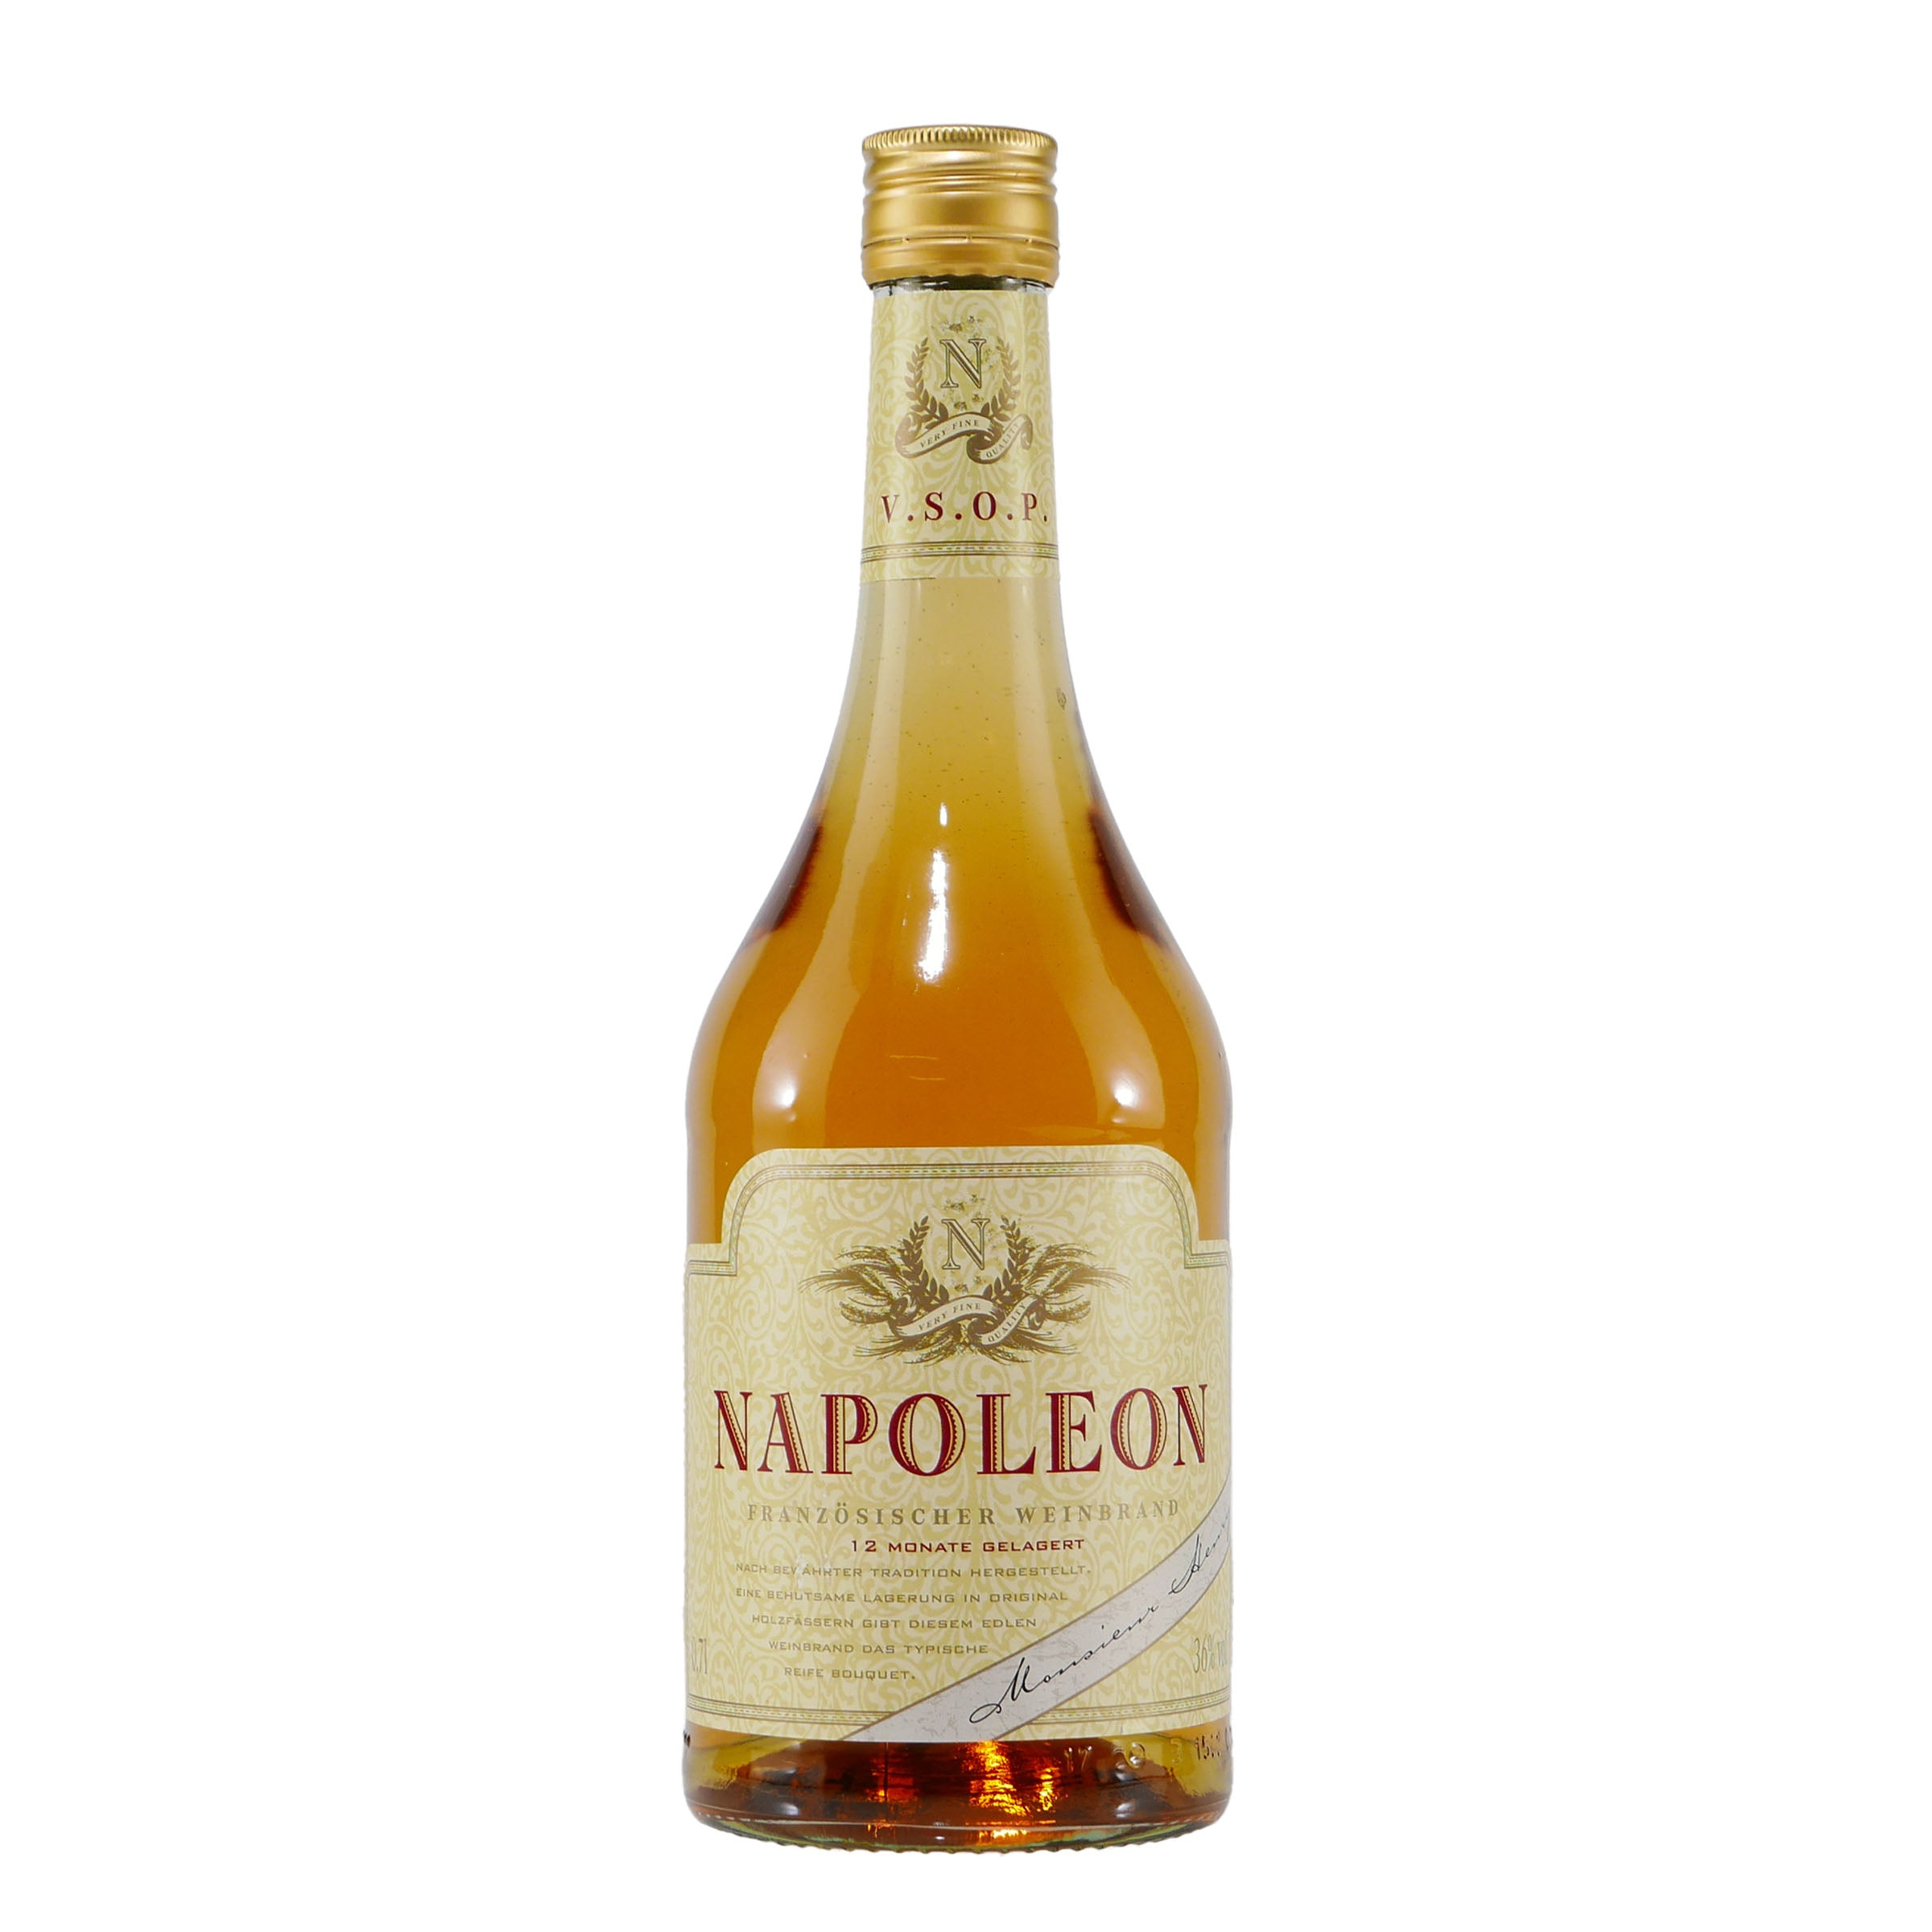 Napoleon V.S.O.P. Französischer Weinbrand